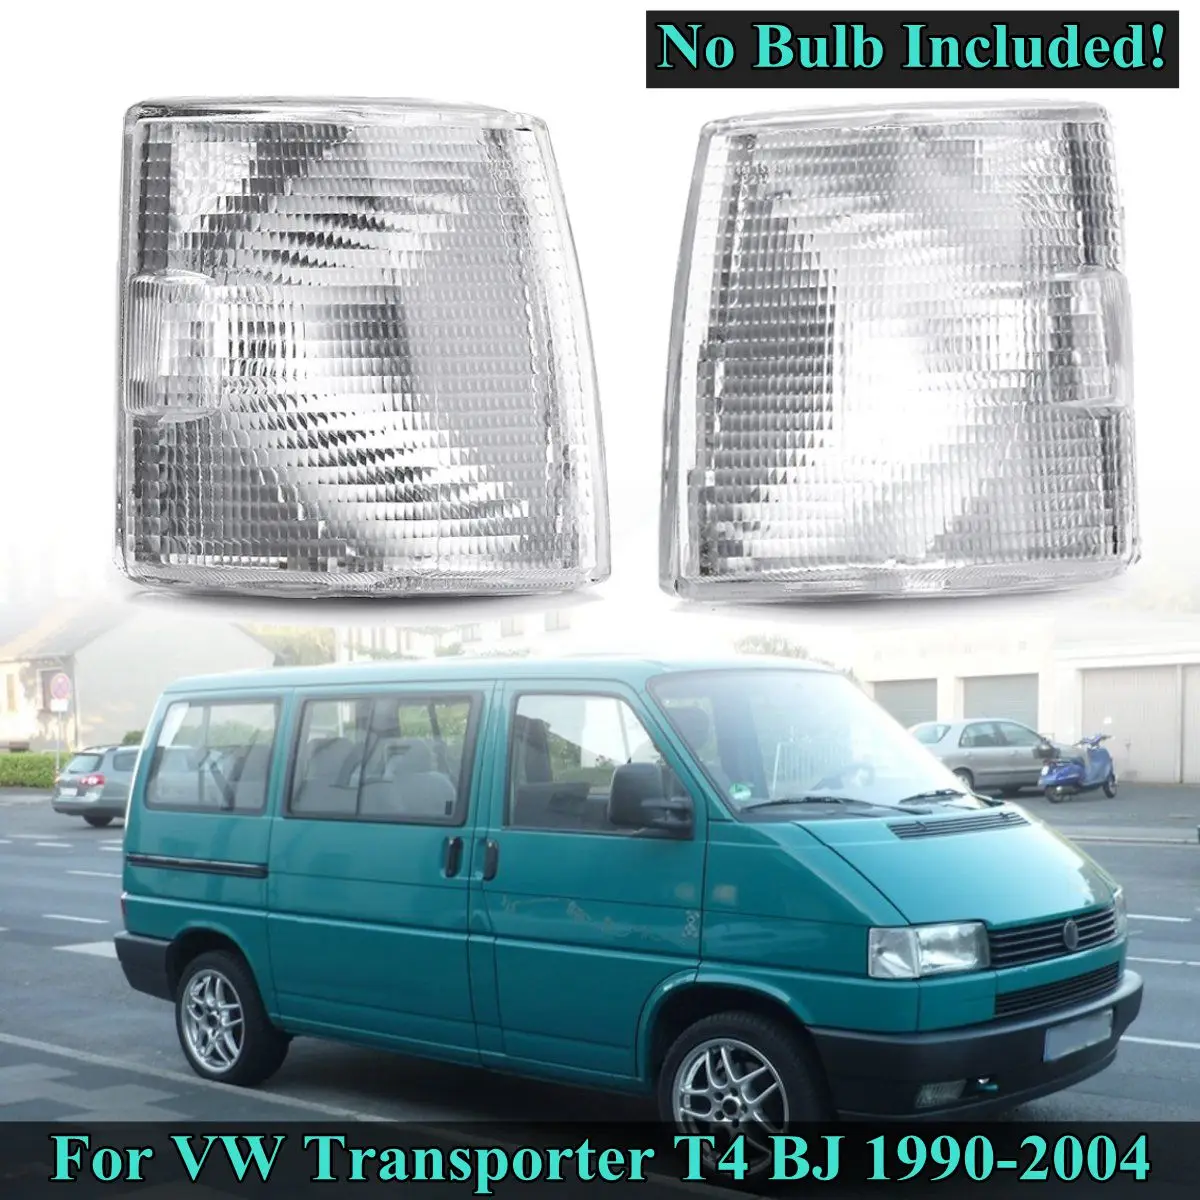 

For VW Transporter T4 BJ 1990 1991 1992 1993 1994 1995 1996~2004 1 Pair Fog Light Cover Corner Lights Indicator Signal Lamp